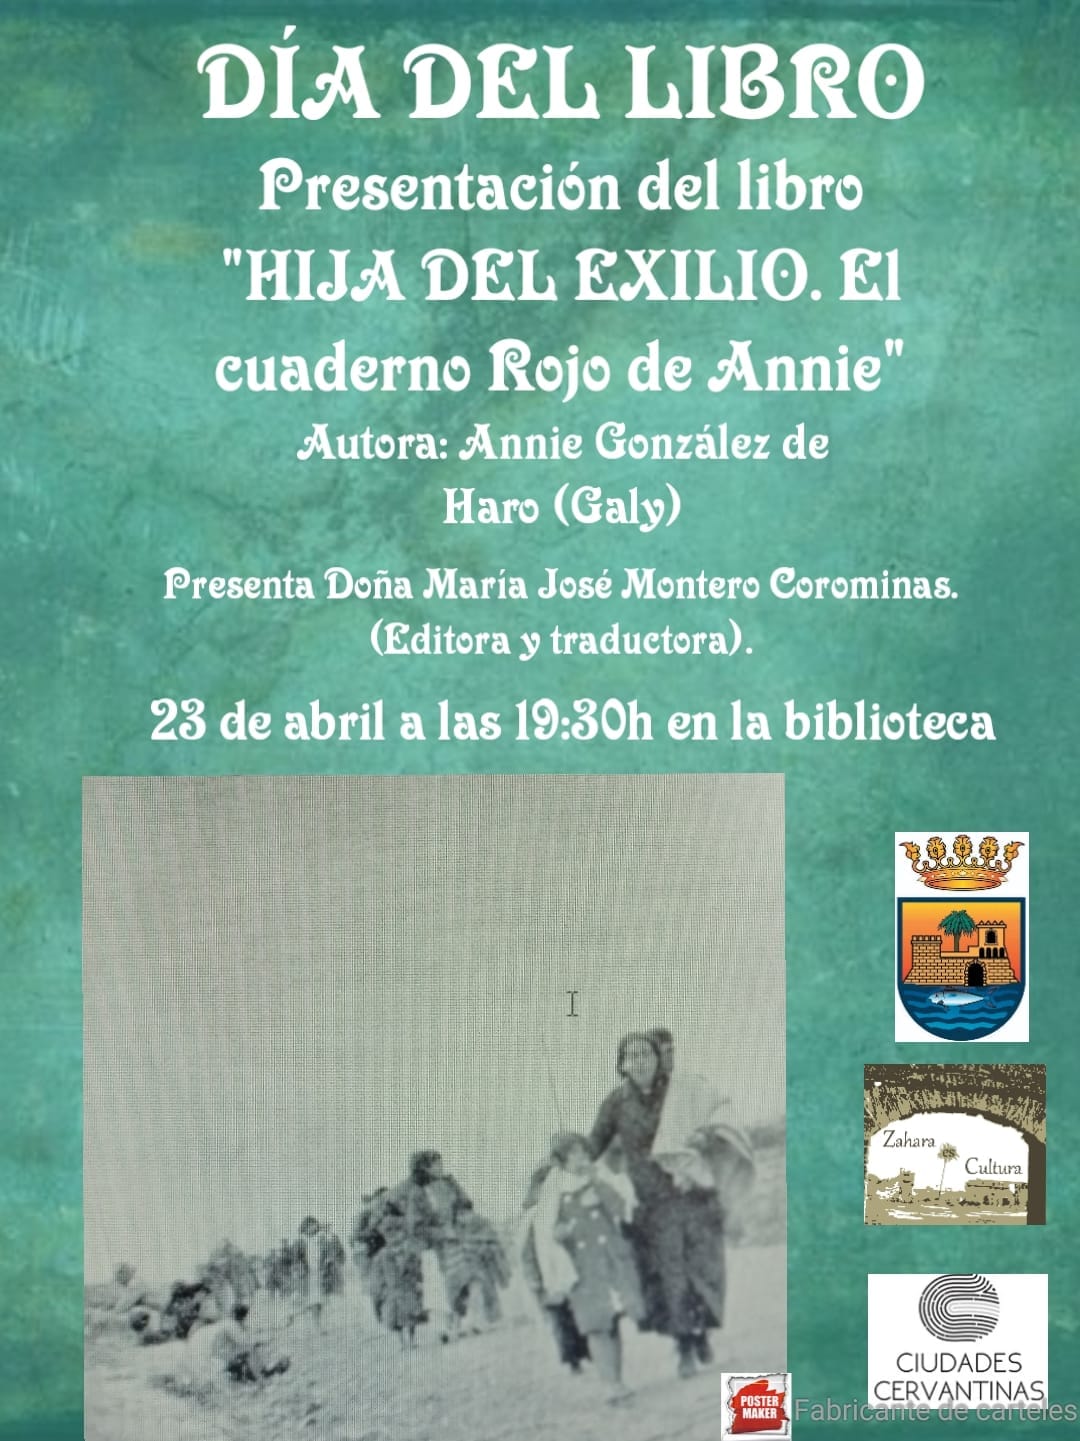 Presentación del libro "HIJA DEL EXILIO. EL CUADERNO ROJO DE ANNIE"